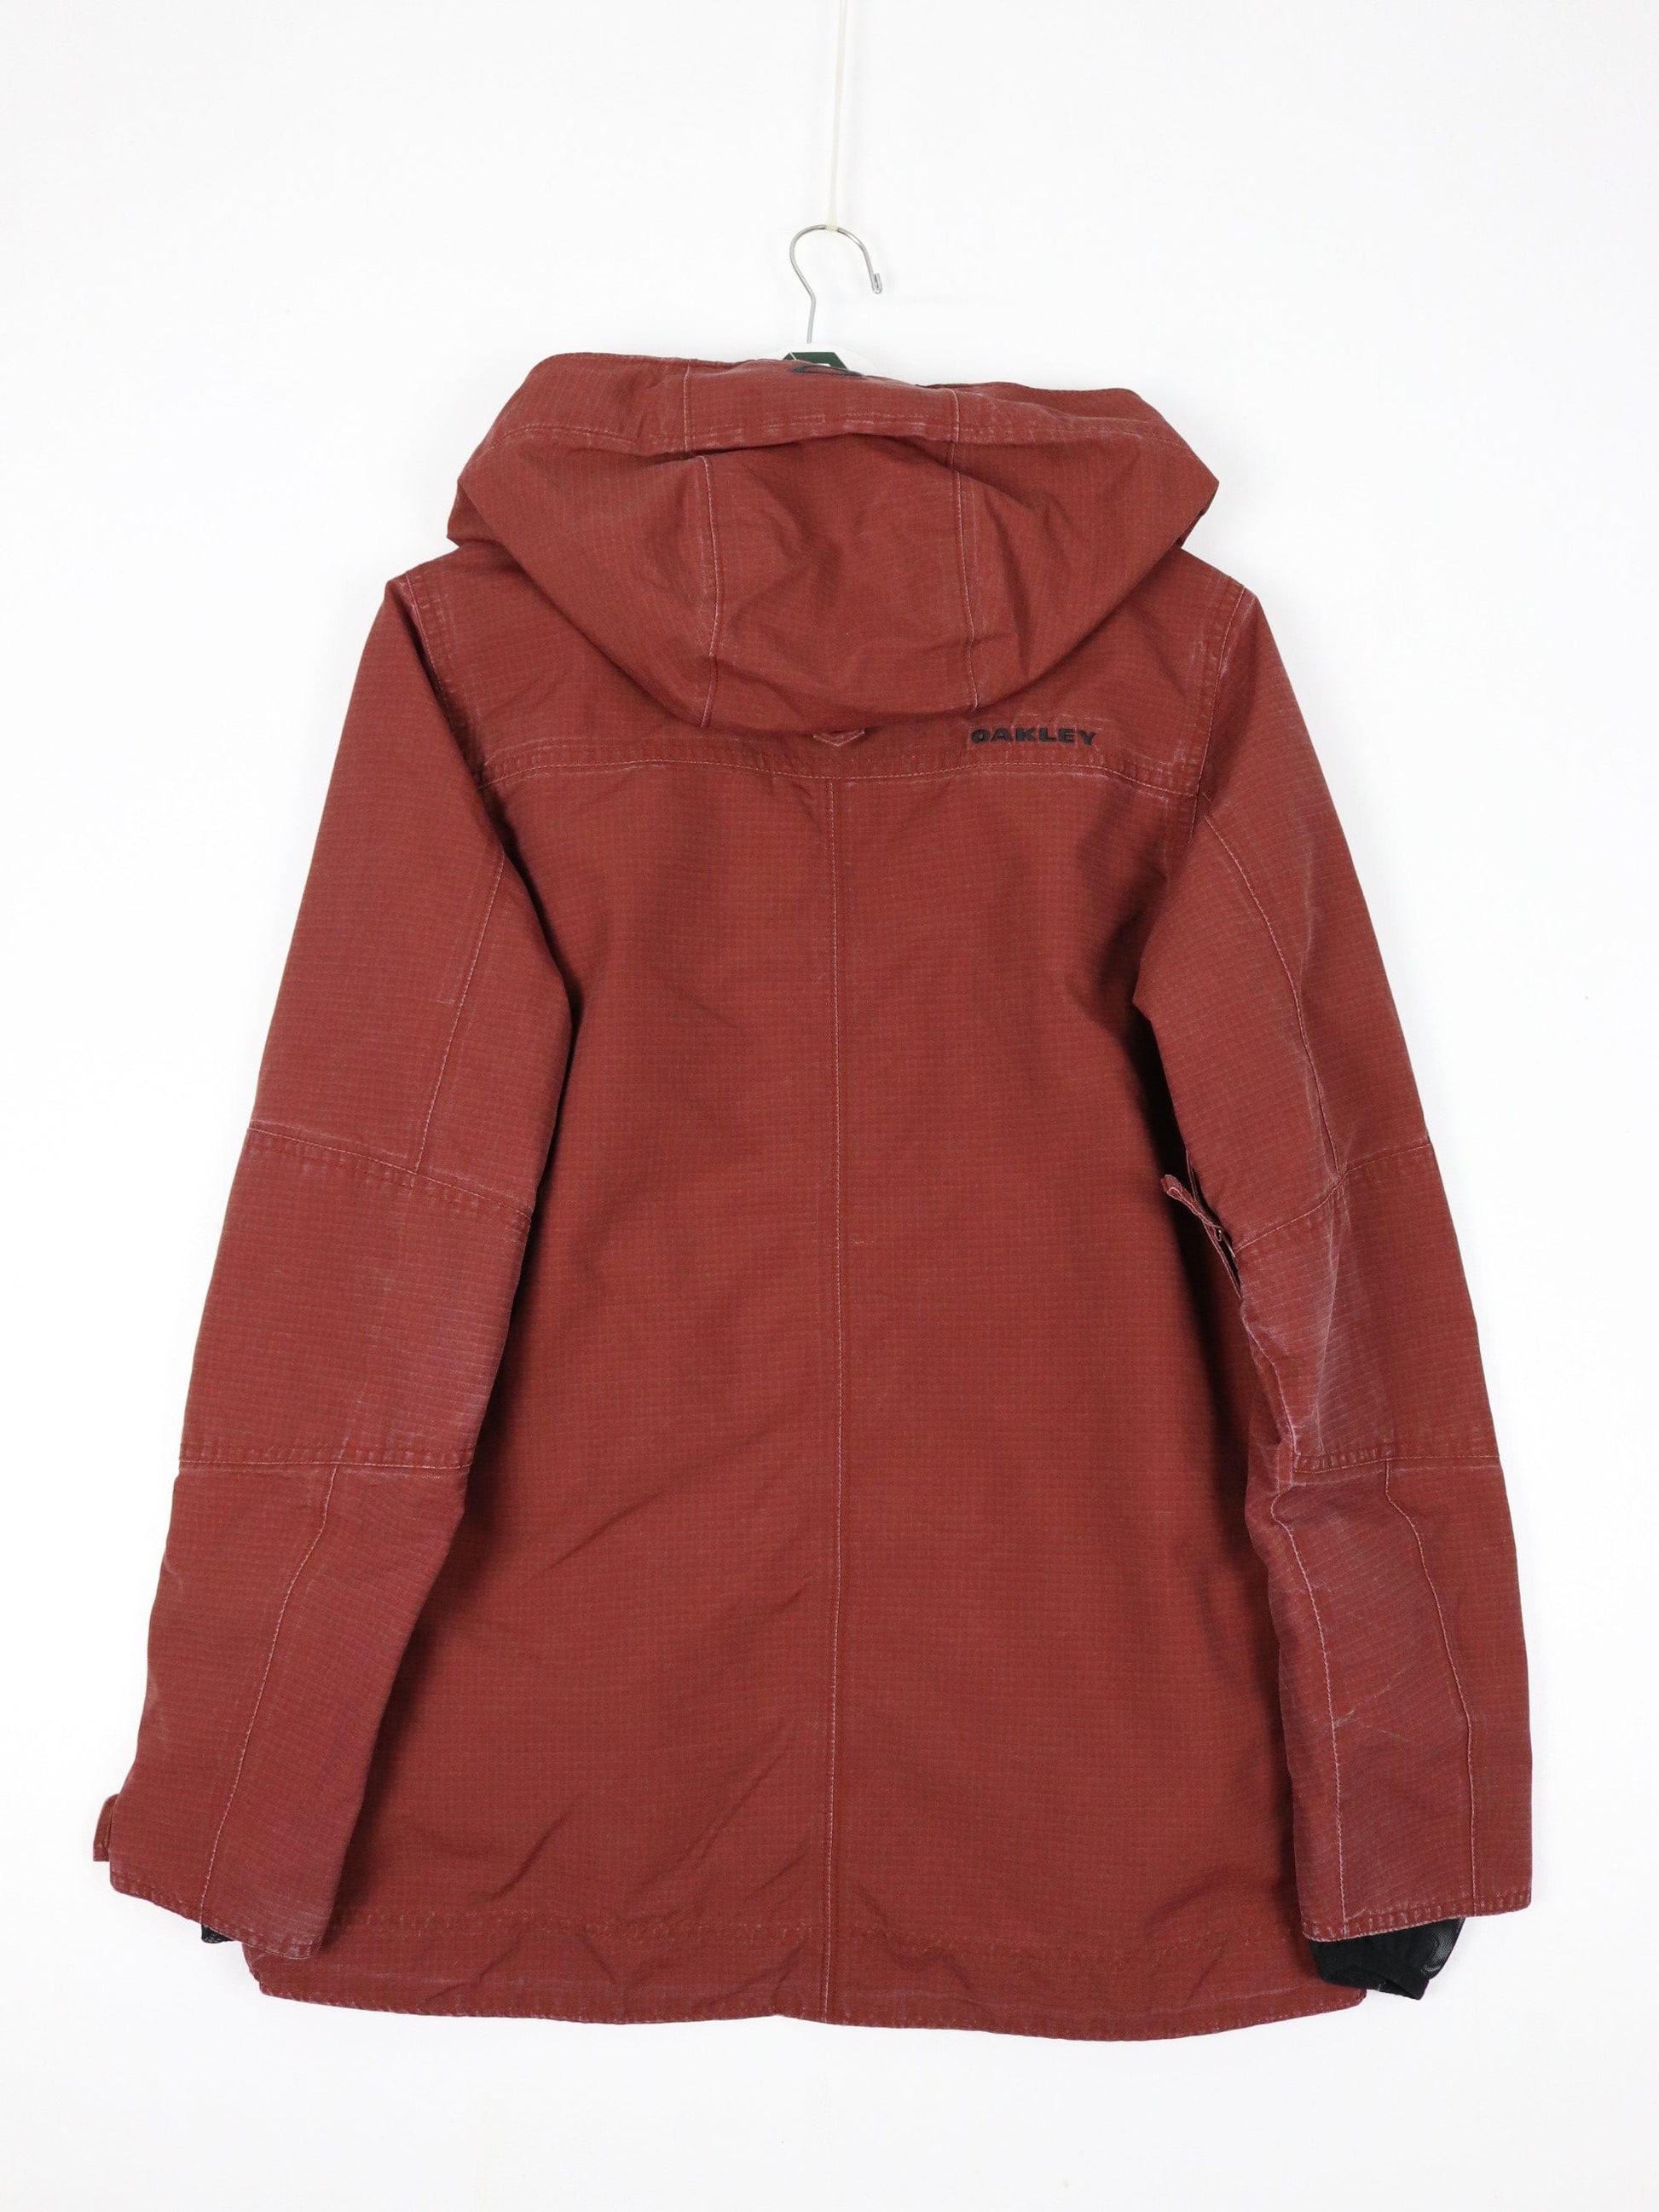 Oakley Jackets & Coats Oakley Jacket Mens Small Red Ski Outdoors Coat Biozone FN Dry